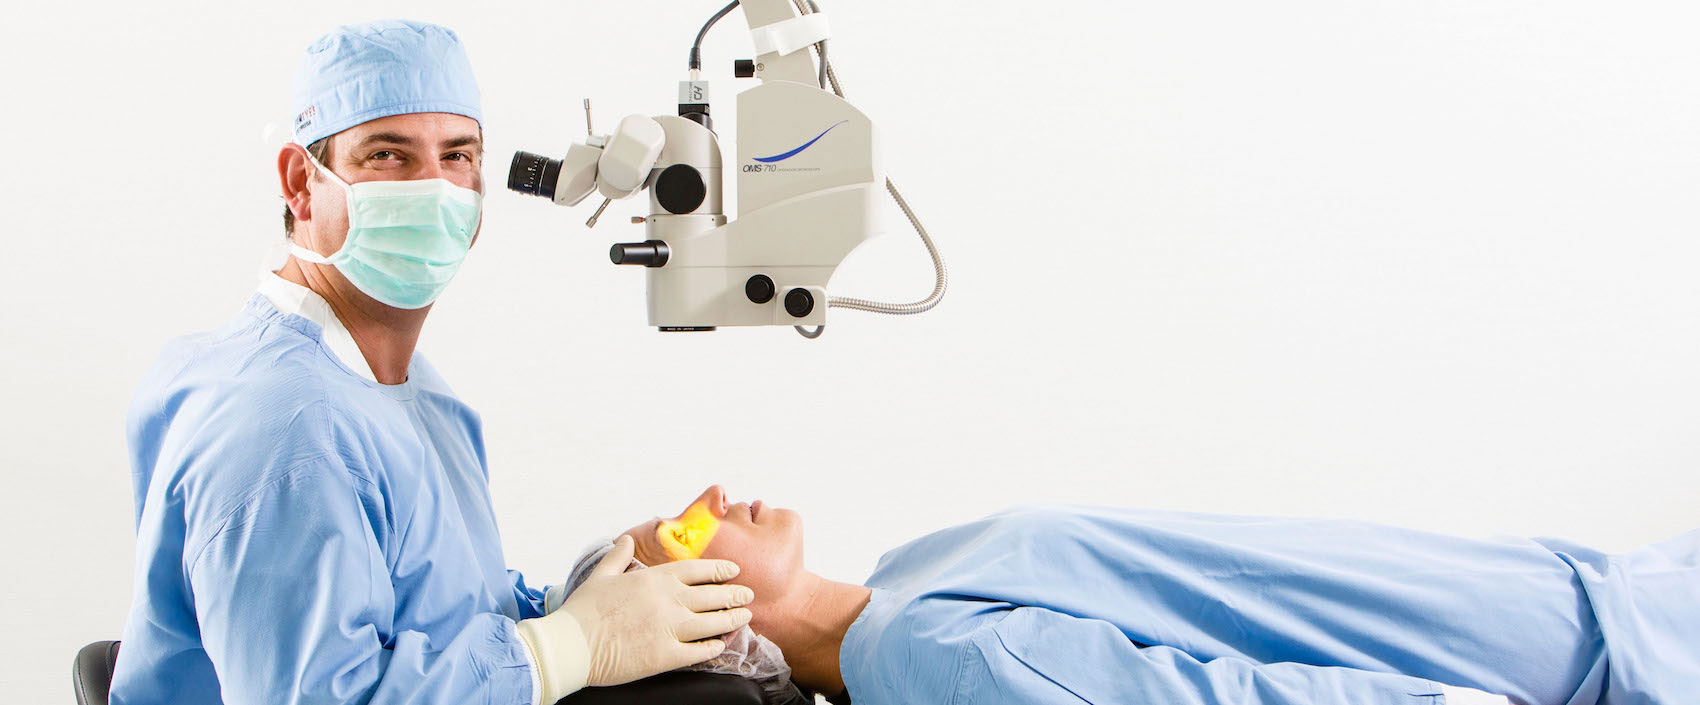 Dr. Detlev Breyer als Operateur am Mikroskop, auf der Liege vor ihm ist eine Patientin.